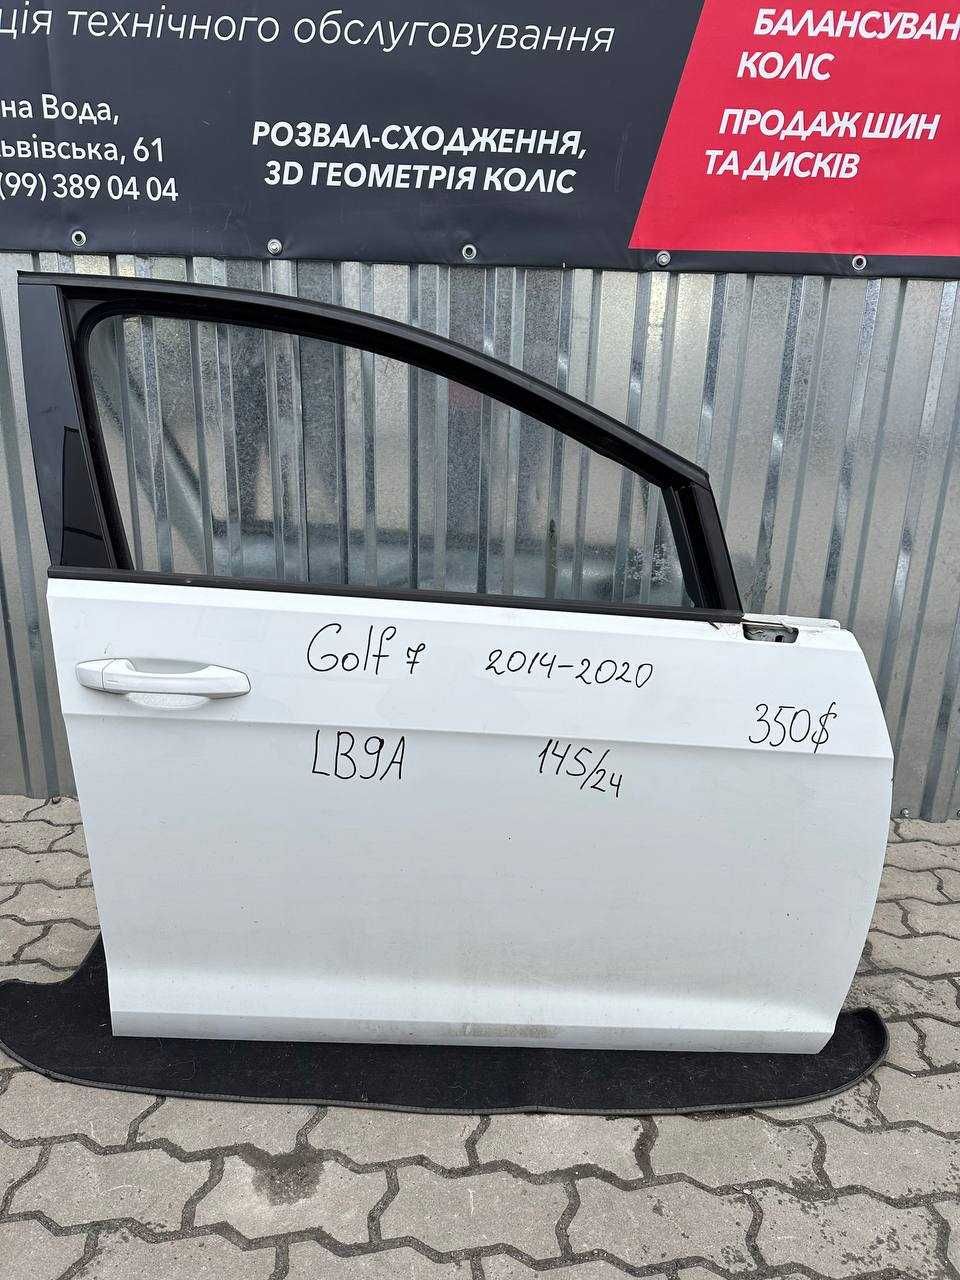 Двері Golf 7 хетчбек 2014-2020 LB9A передні та задні вживані